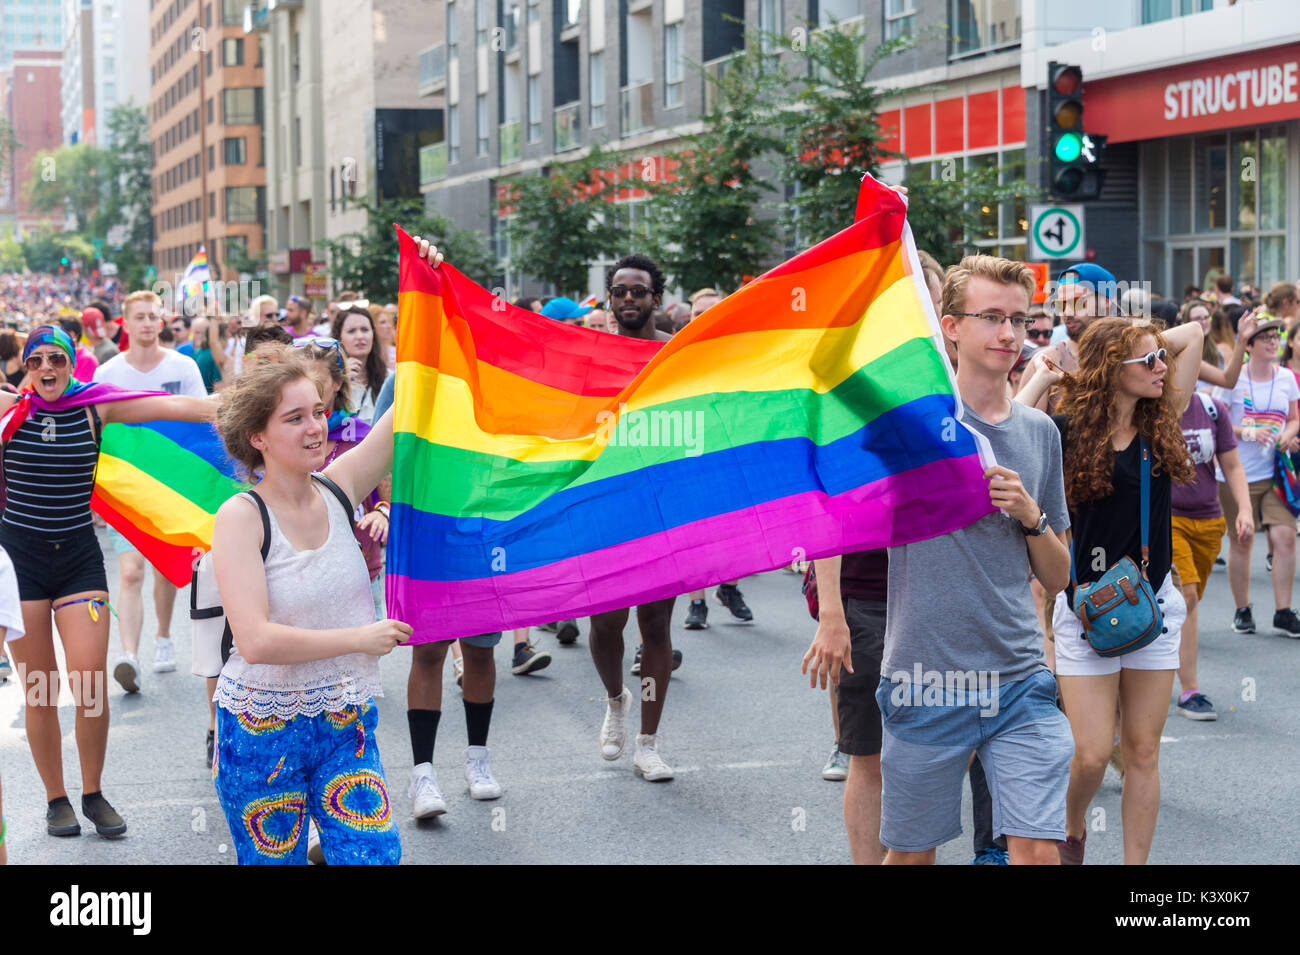 Montréal, Canada - 20 août 2017 : deux jeunes personnes sont titulaires d'un grand drapeau arc-en-ciel gay Gay Pride Parade à Montréal Banque D'Images